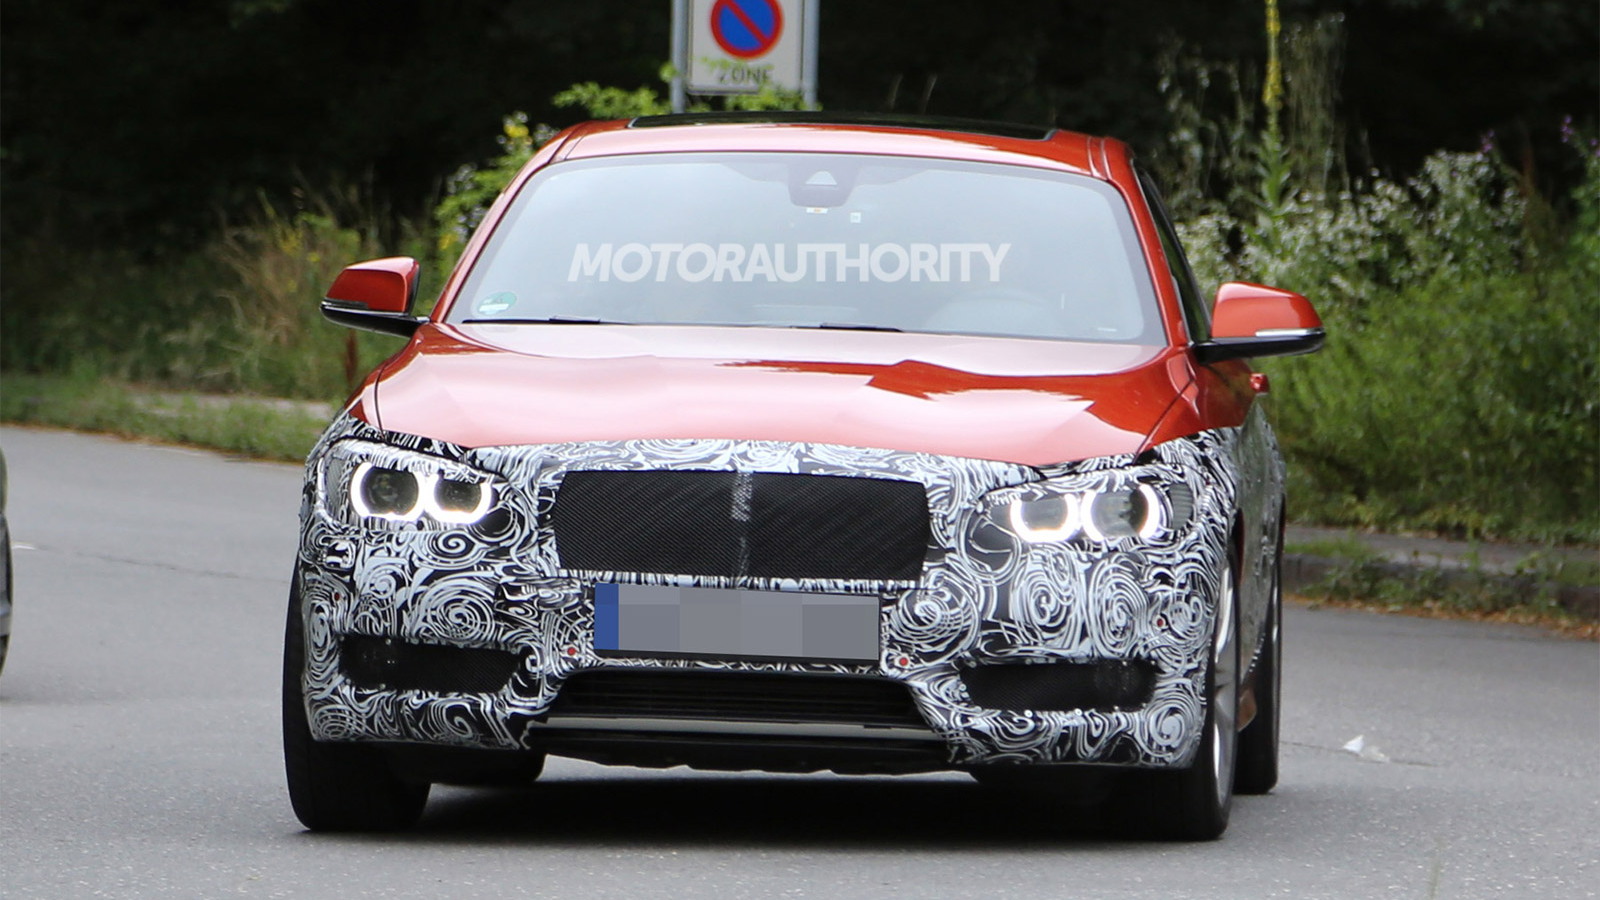 2015 BMW 1-Series Hatchback facelift spy shots